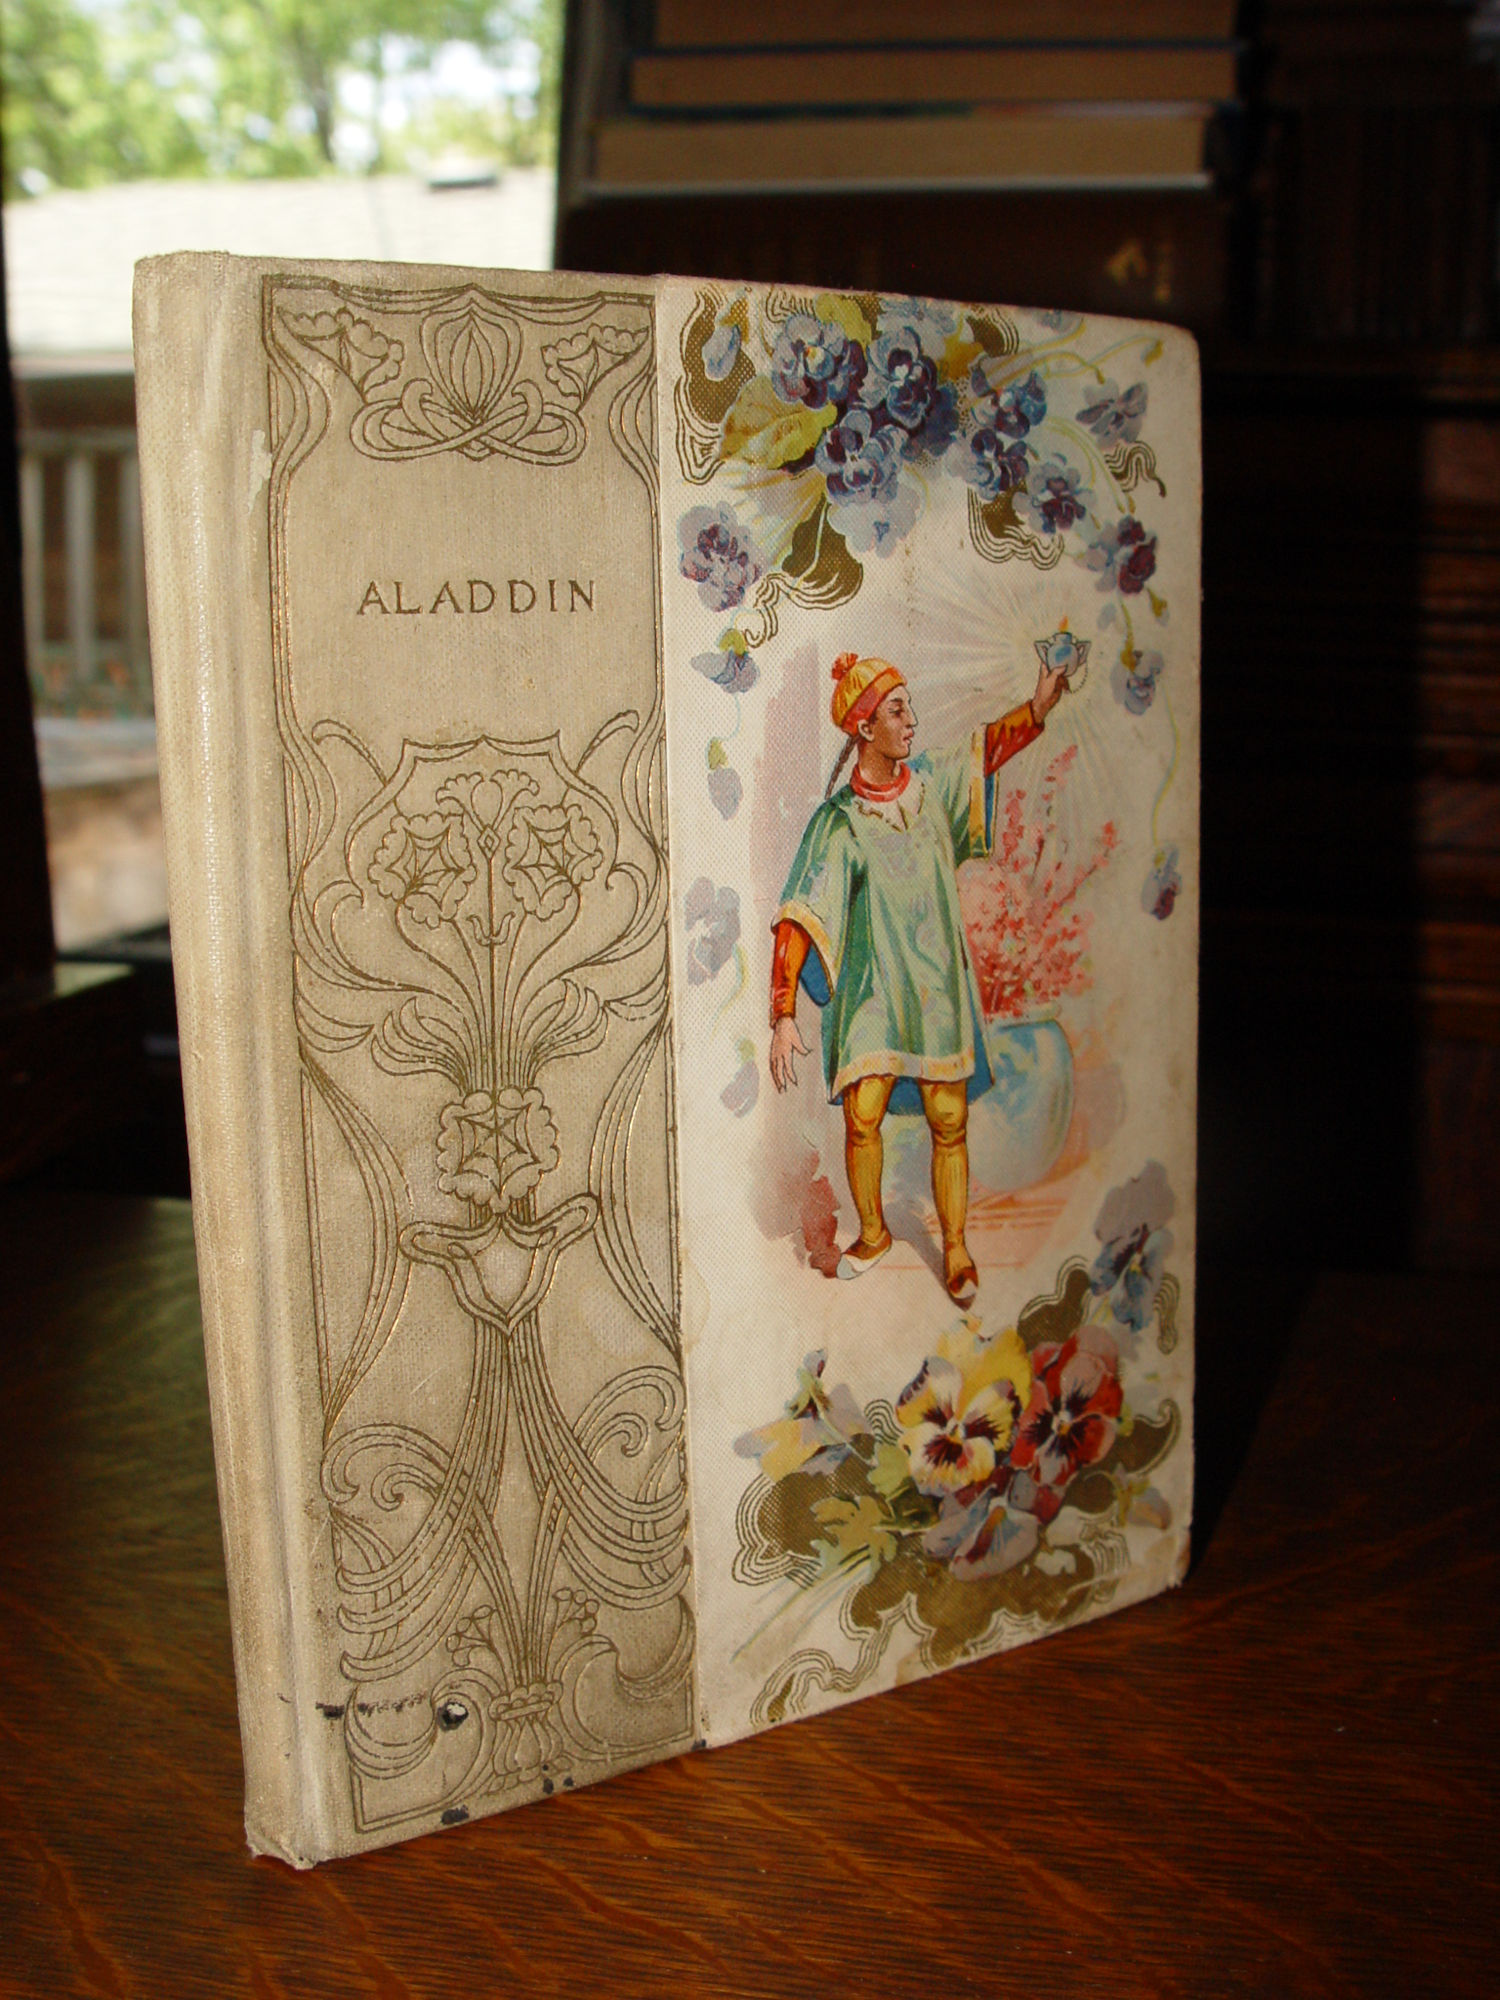 ALADDIN; or, The Wonderful Lamp Altemus'
                        Banbury Cross Series